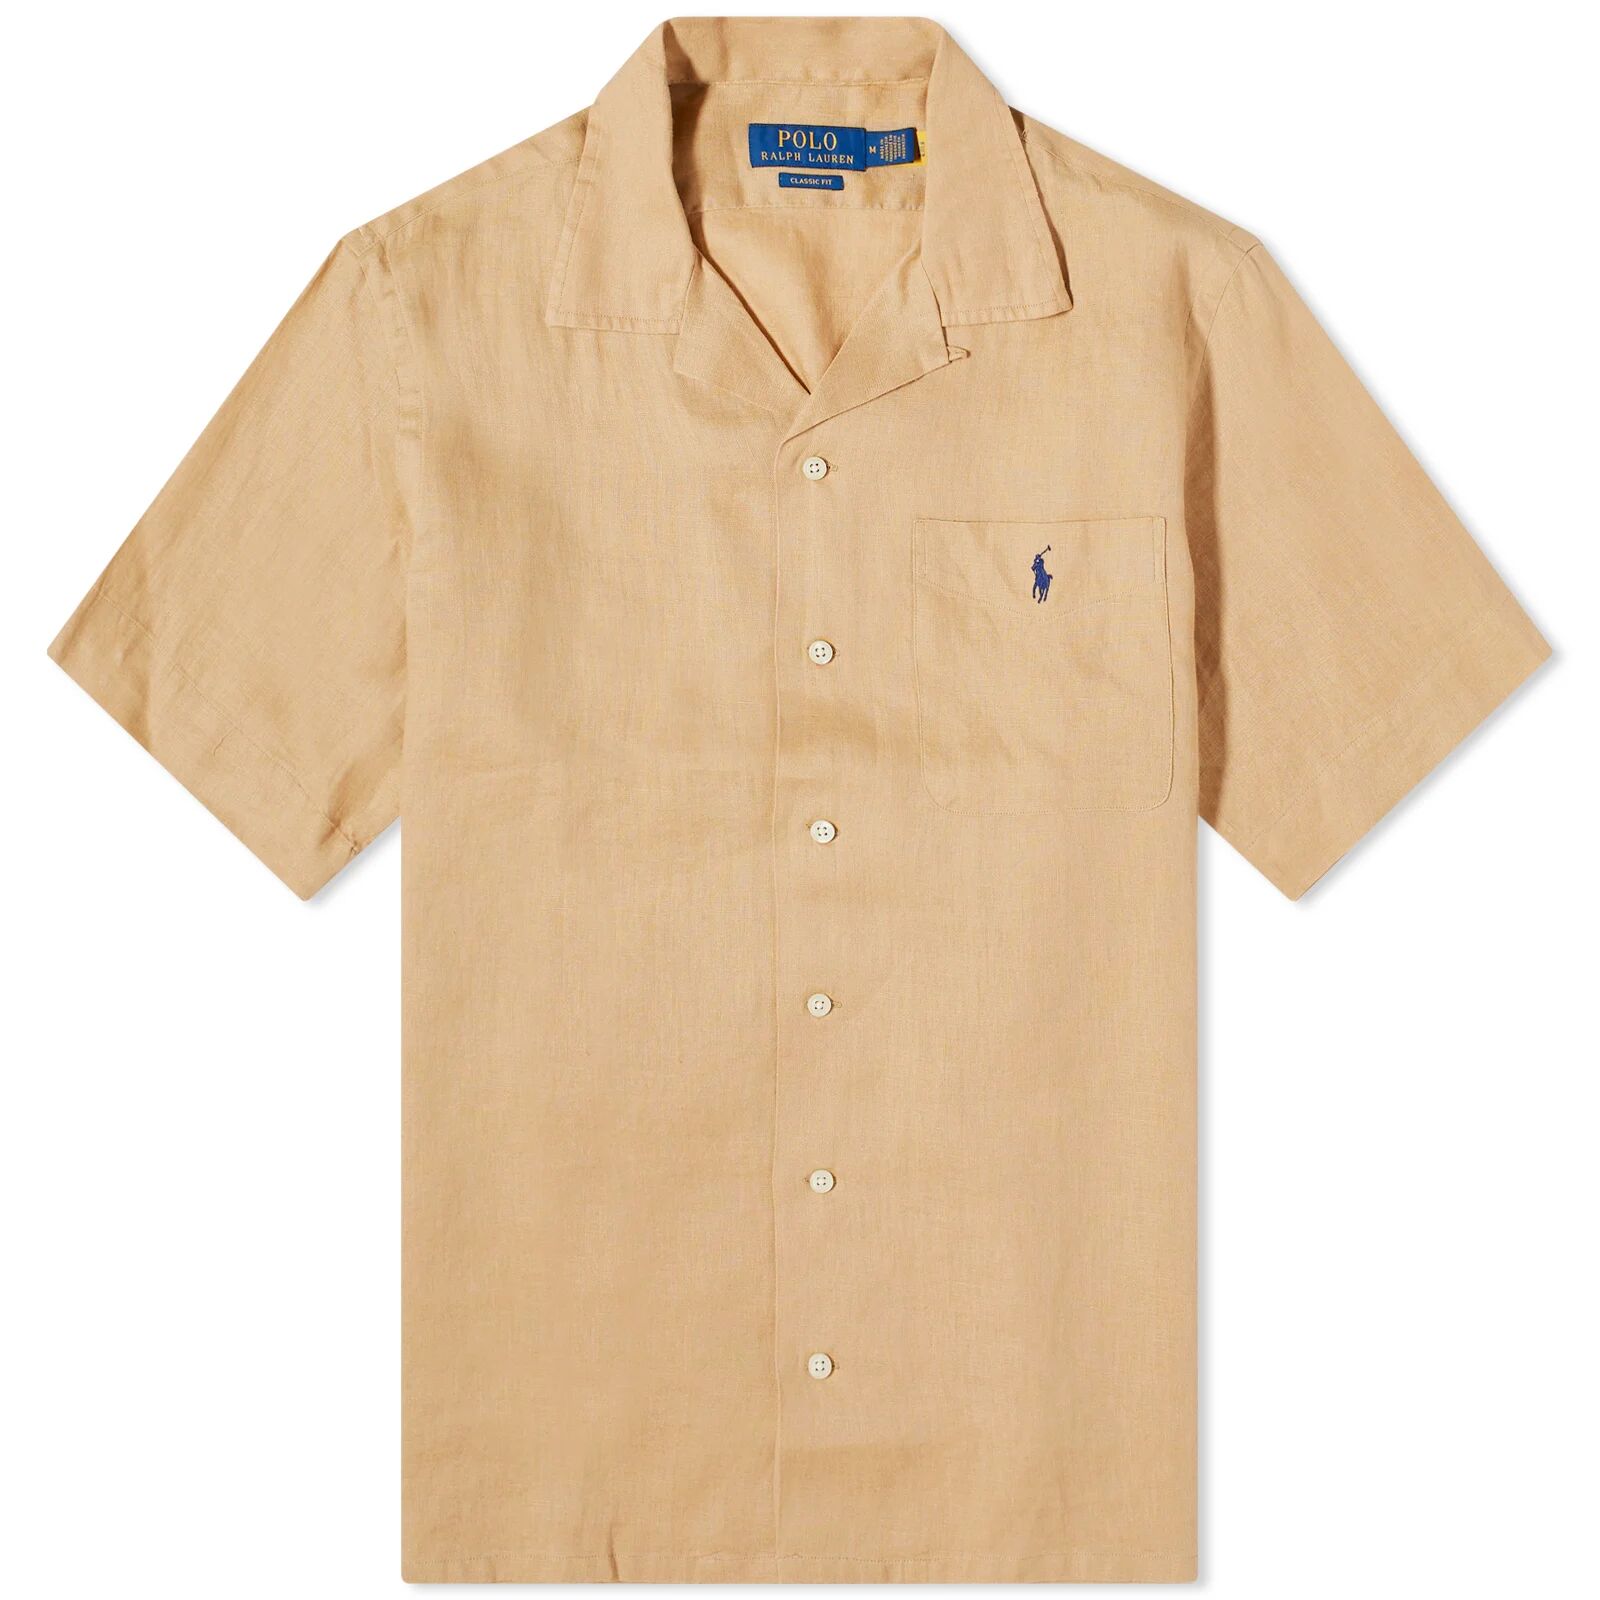 Polo Ralph Lauren Men's Linen Vacation Shirt in Vintage Khaki, Size X-Large